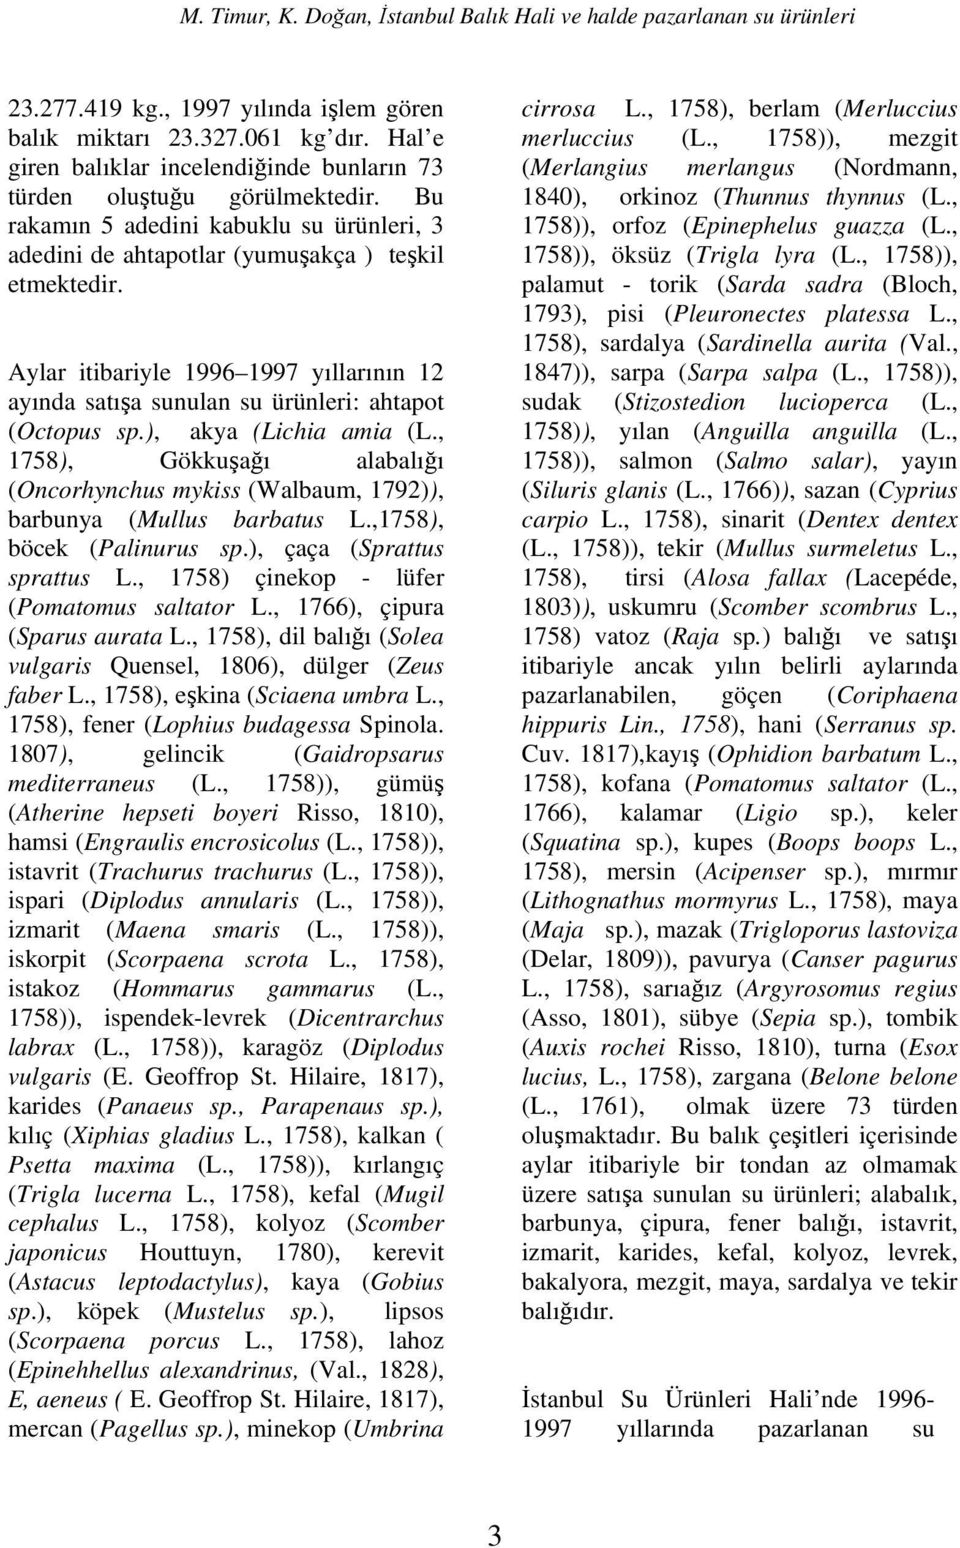 ), akya (Lichia amia (L., 18), Gökkuşağı alabalığı (Oncorhynchus mykiss (Walbaum, 1792)), barbunya (Mullus barbatus L.,18), böcek (Palinurus sp.), çaça (Sprattus sprattus L.